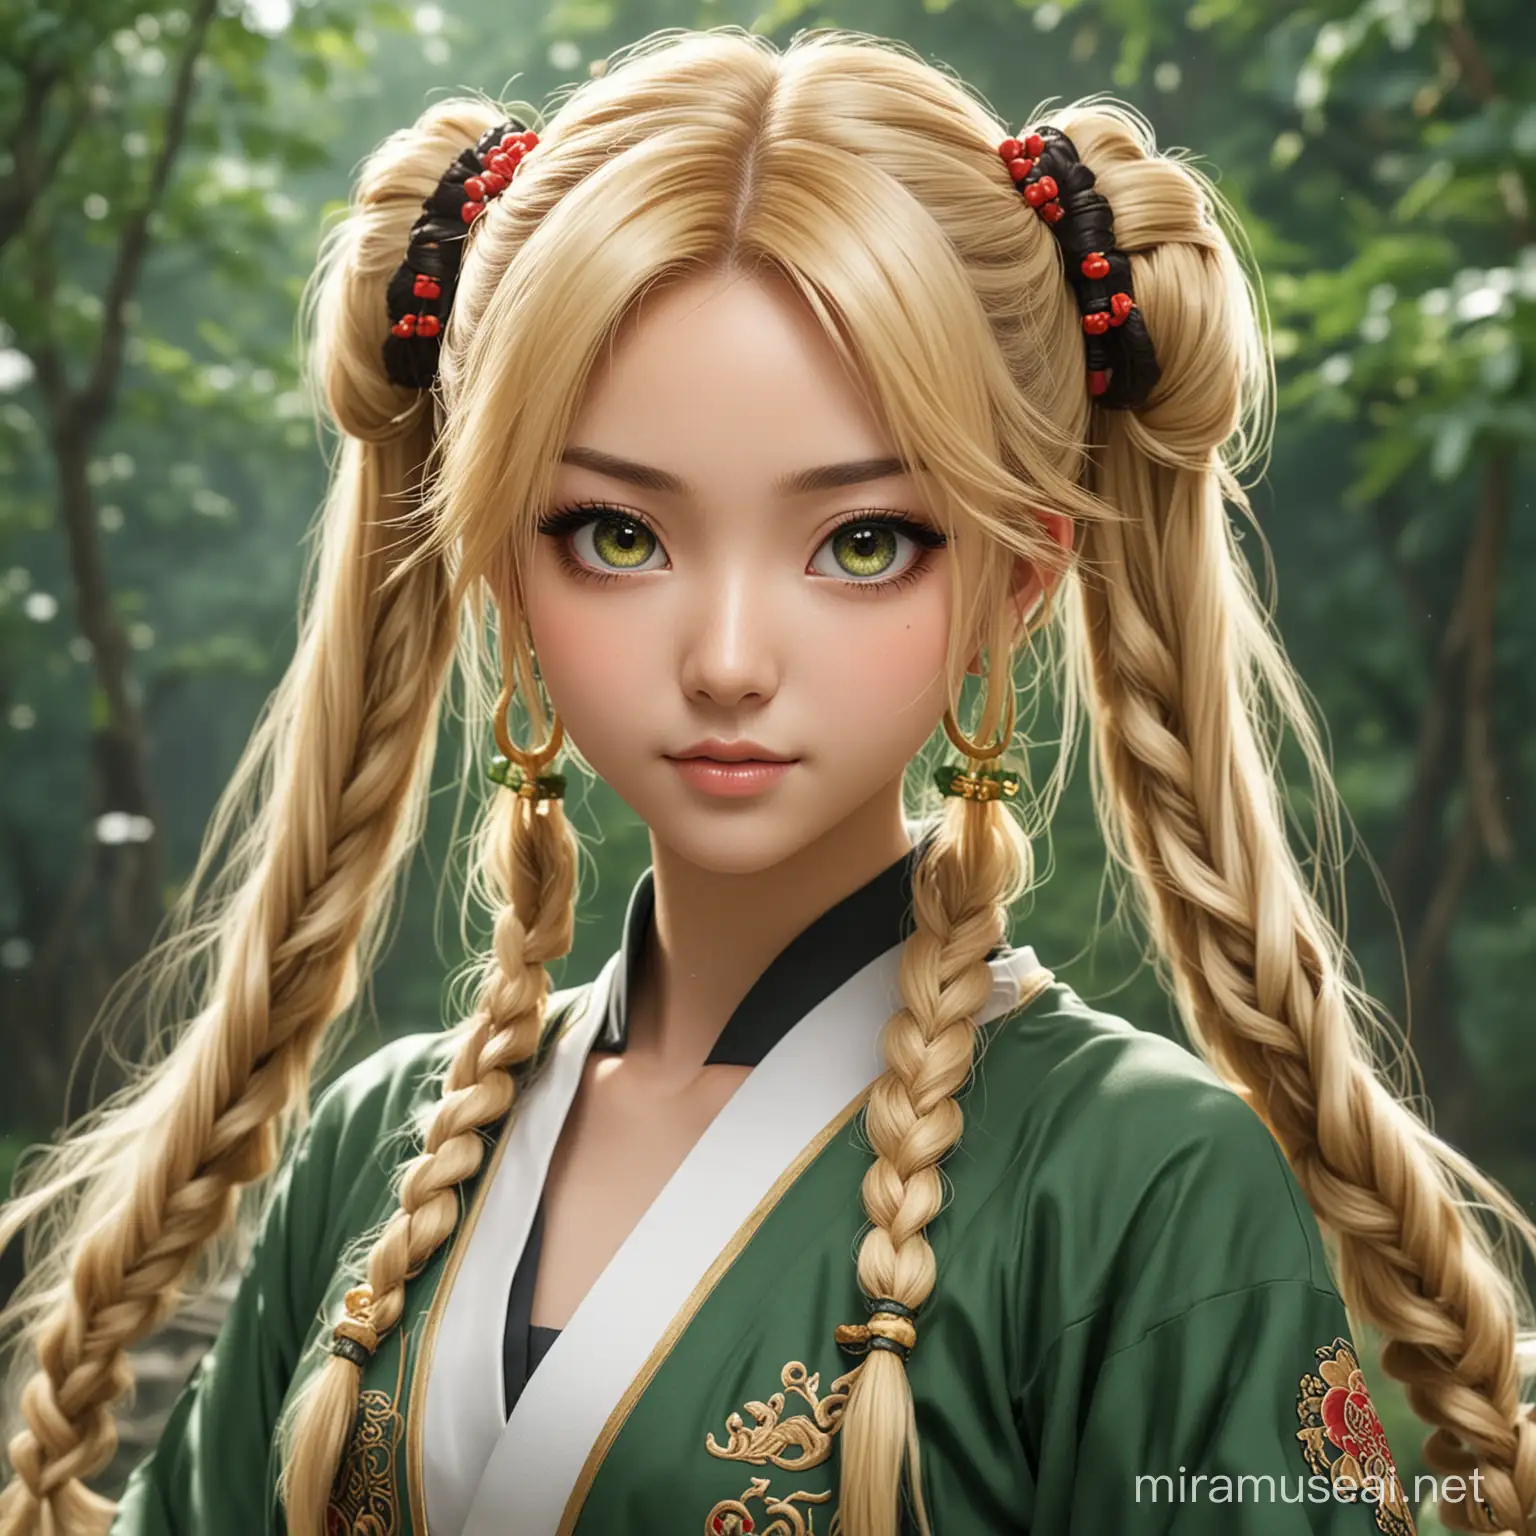 chica anime joven, 25 años, cabello largo, rubio con mechones castaños, ojos verdes jungla, peinado elaborado de dos coletas estilo chino y japonés, y vestuario de aventurera china.